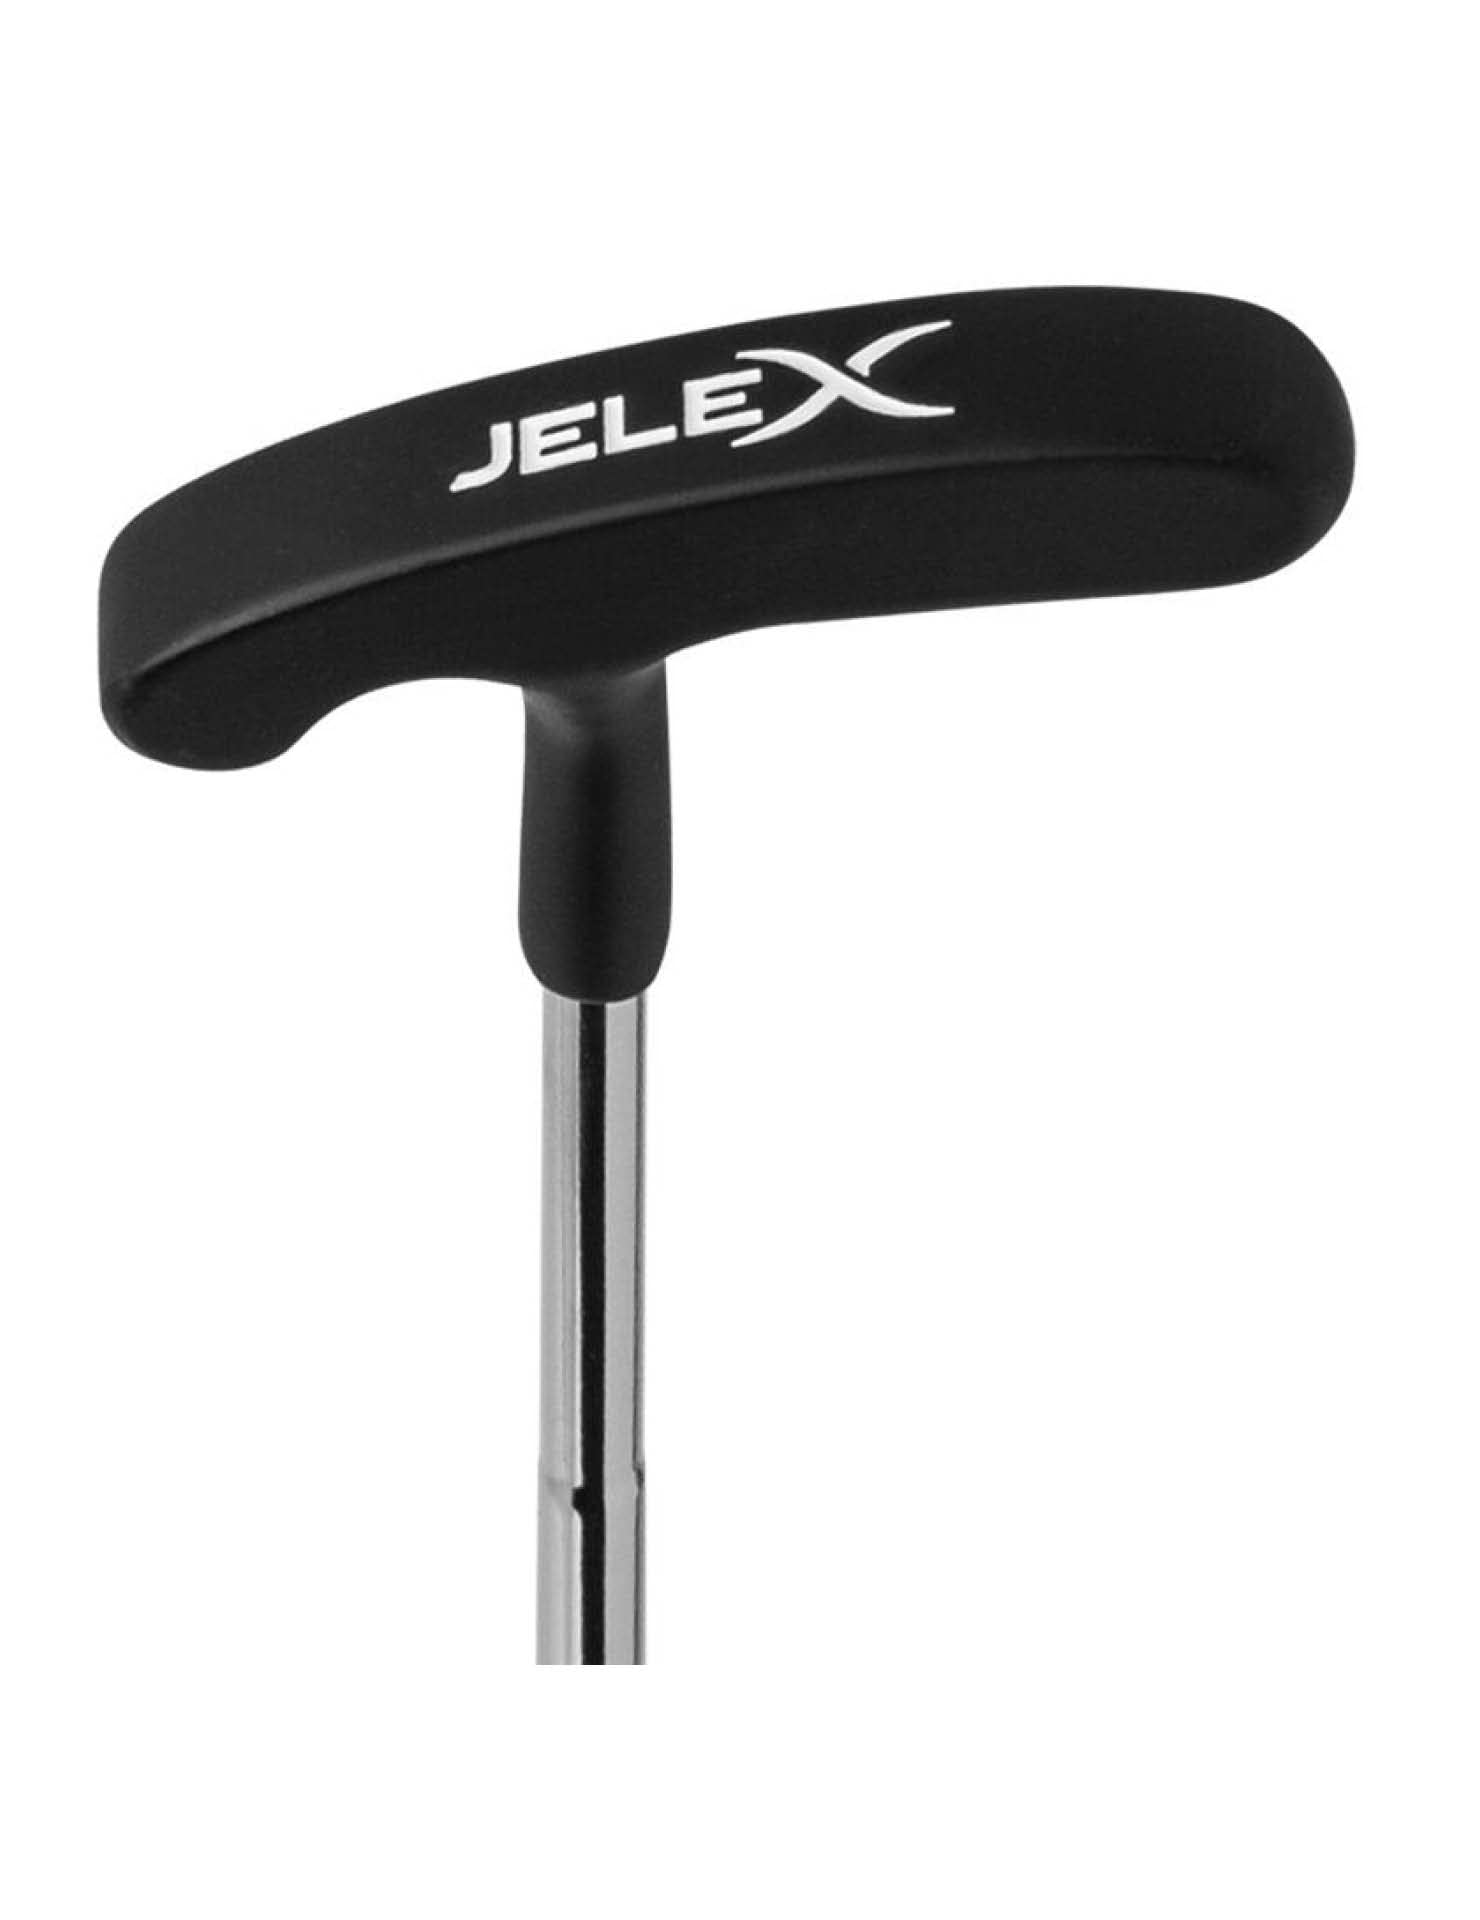 JELEX Golf Putter aus Zink und Edelstah-Schaft Linkshand Golfschläger für Herren und Damen, 85 cm lang, Gewicht: 0,50 kg, für Anfänger und Profis, pflegeleicht und langlebig verarbeitet